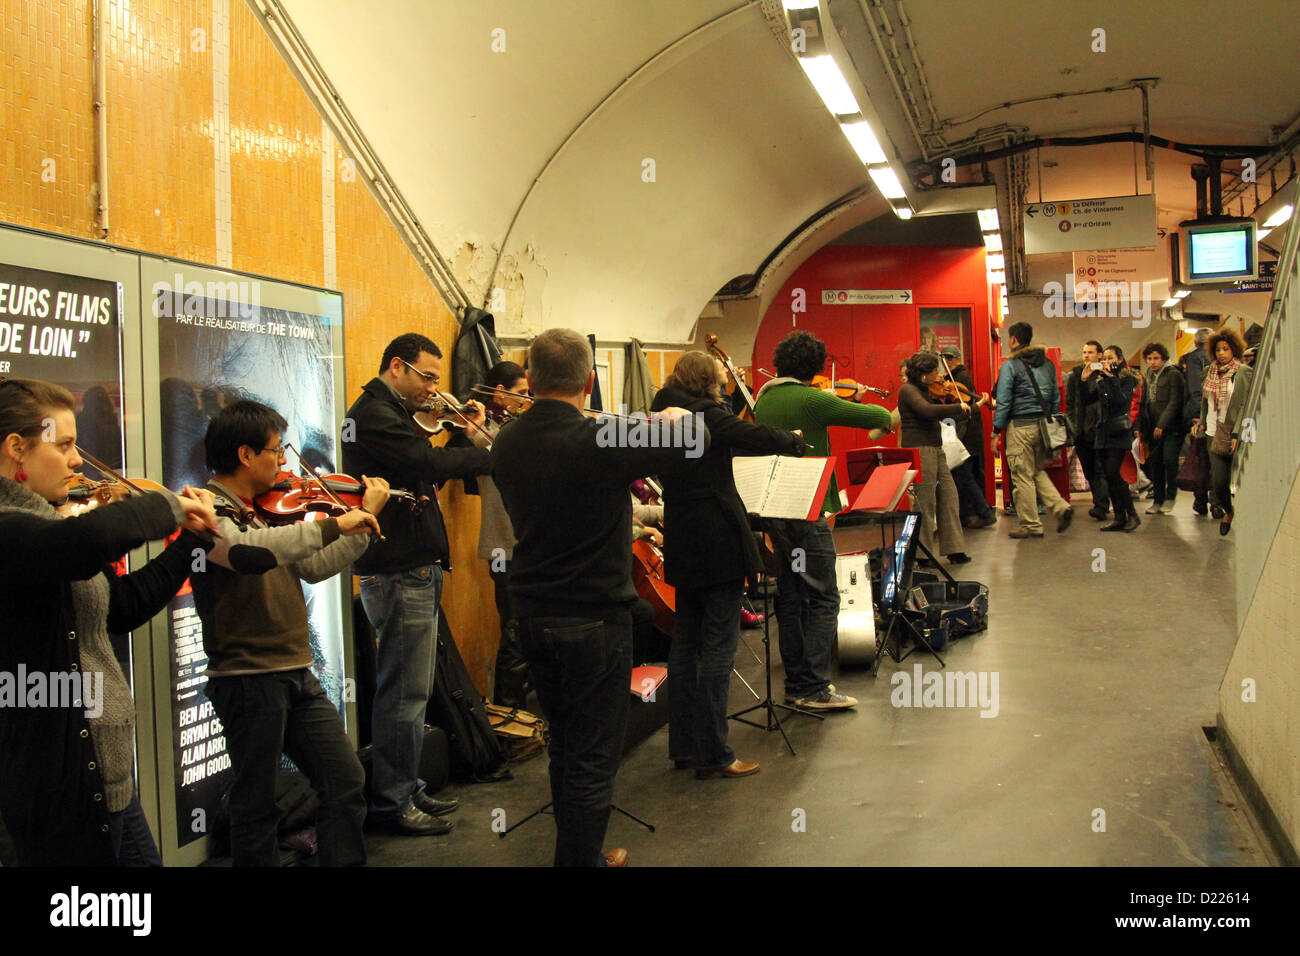 L'orchestre joue sur la station de métro à Paris le 06 novembre 2012 à Paris, France Banque D'Images